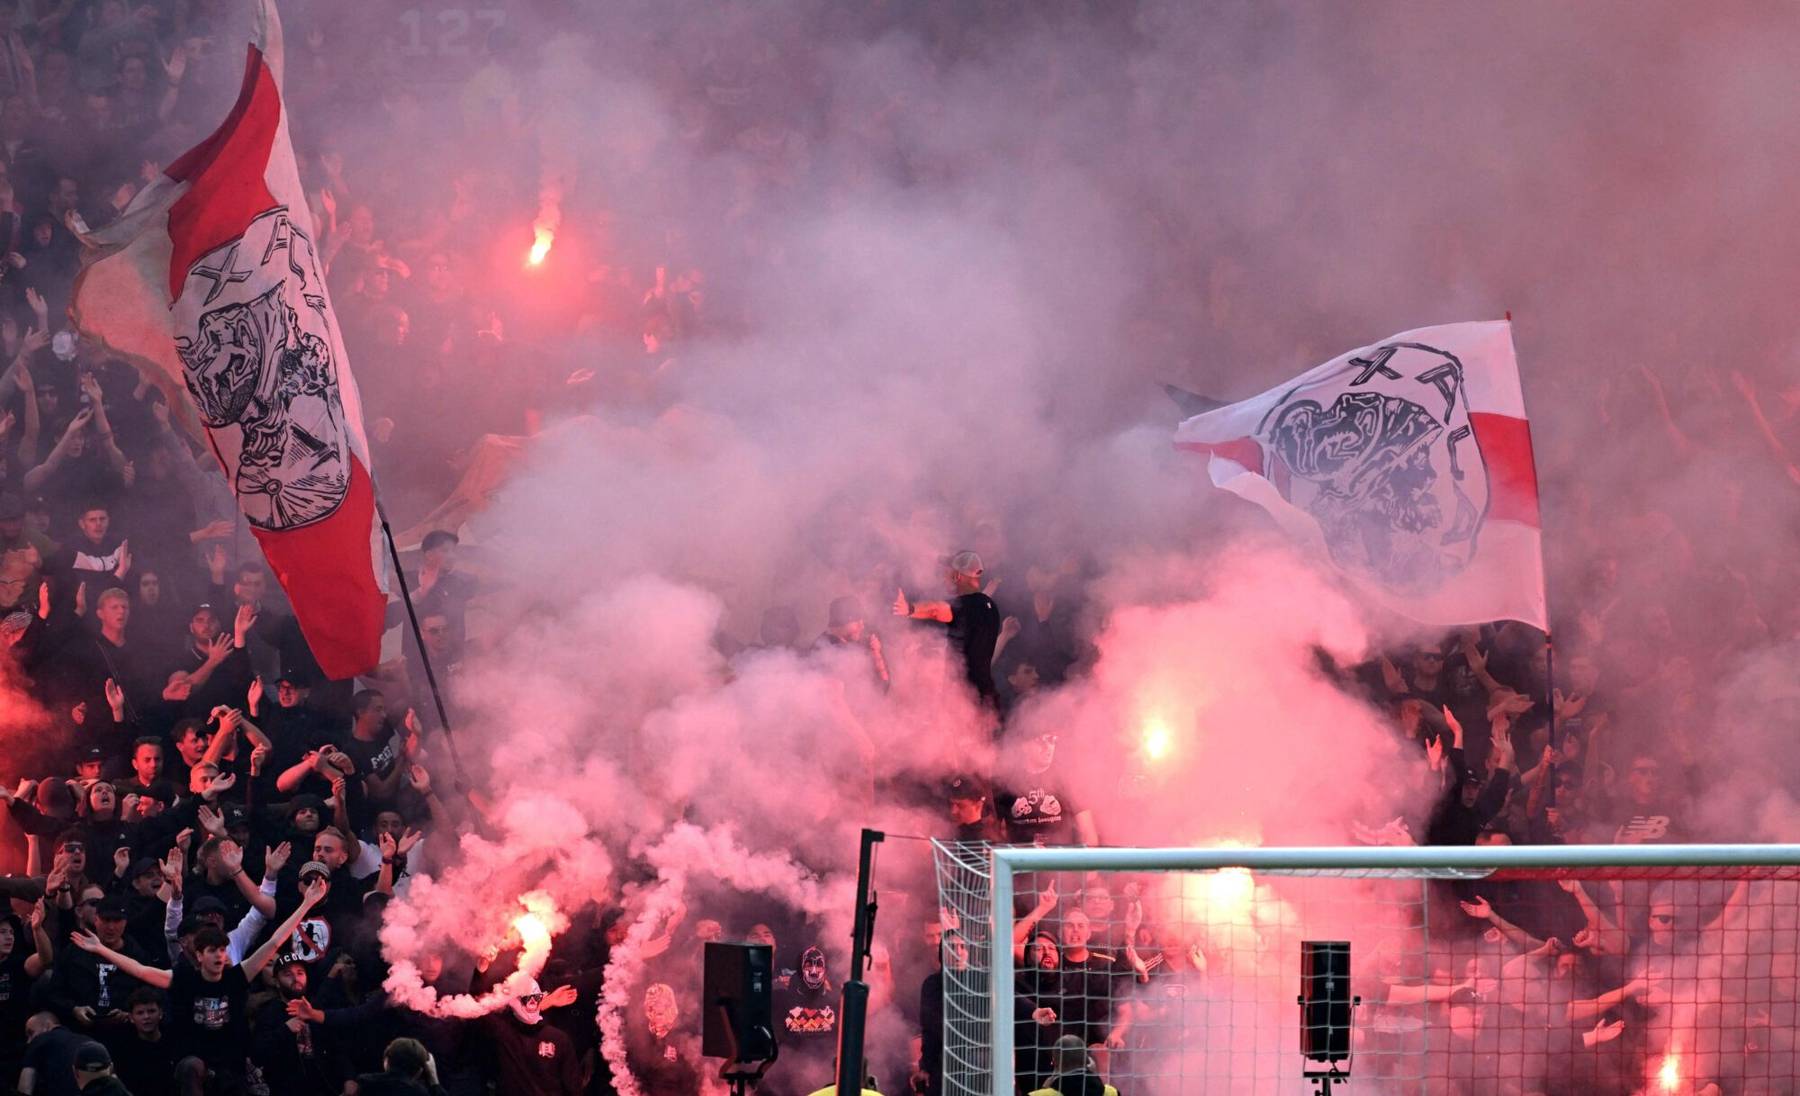 Ajax - Feyenoord